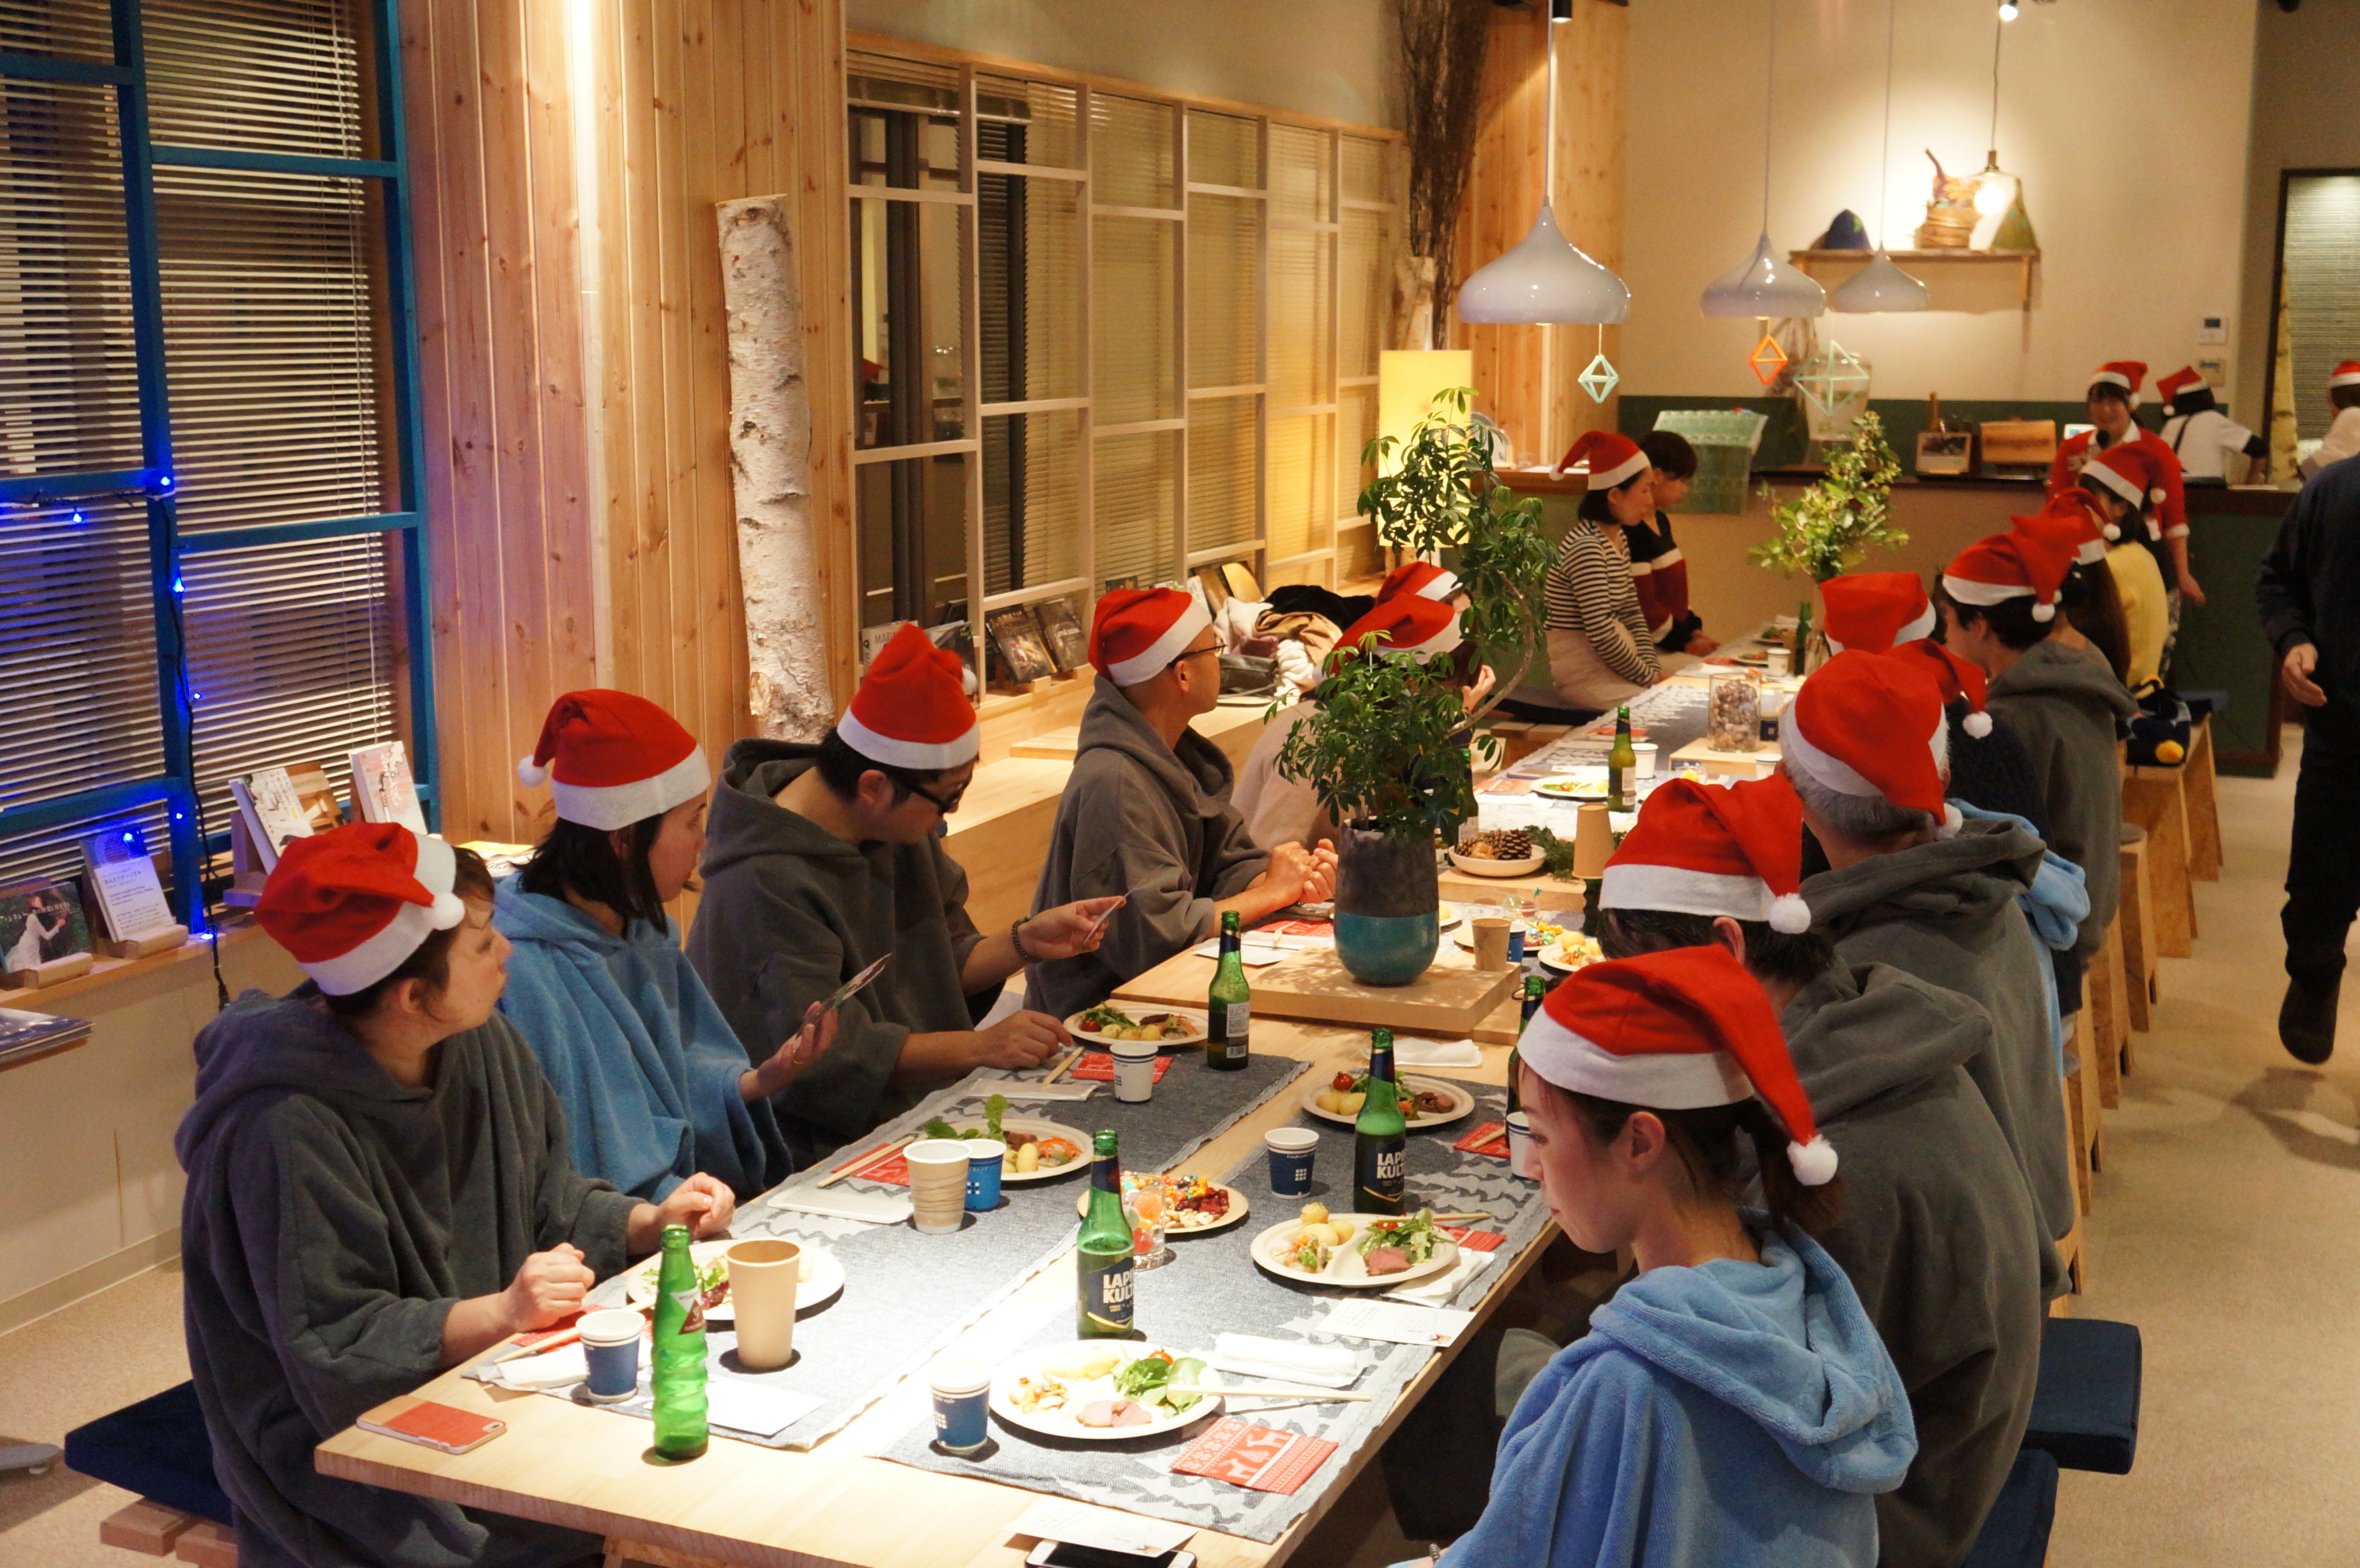 クリスマスはsaunalabでサ活 ヨウルサウナ体験ツアー フィンランド式サウナで楽しむクリスマス 軽食 プレゼントあり 大ナゴヤツアーズ Dai Nagoya Tours